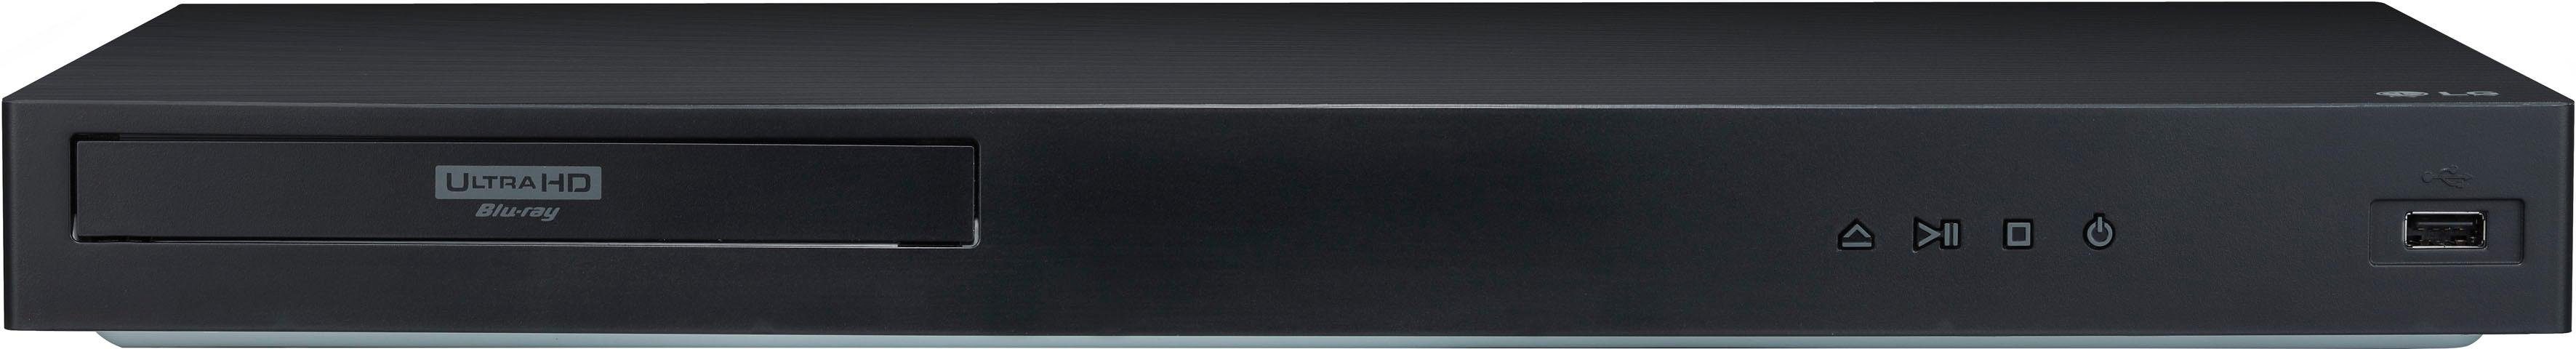 LG UBK90 Blu-ray-Player (4k Ultra HD, 4K Upscaling) WLAN